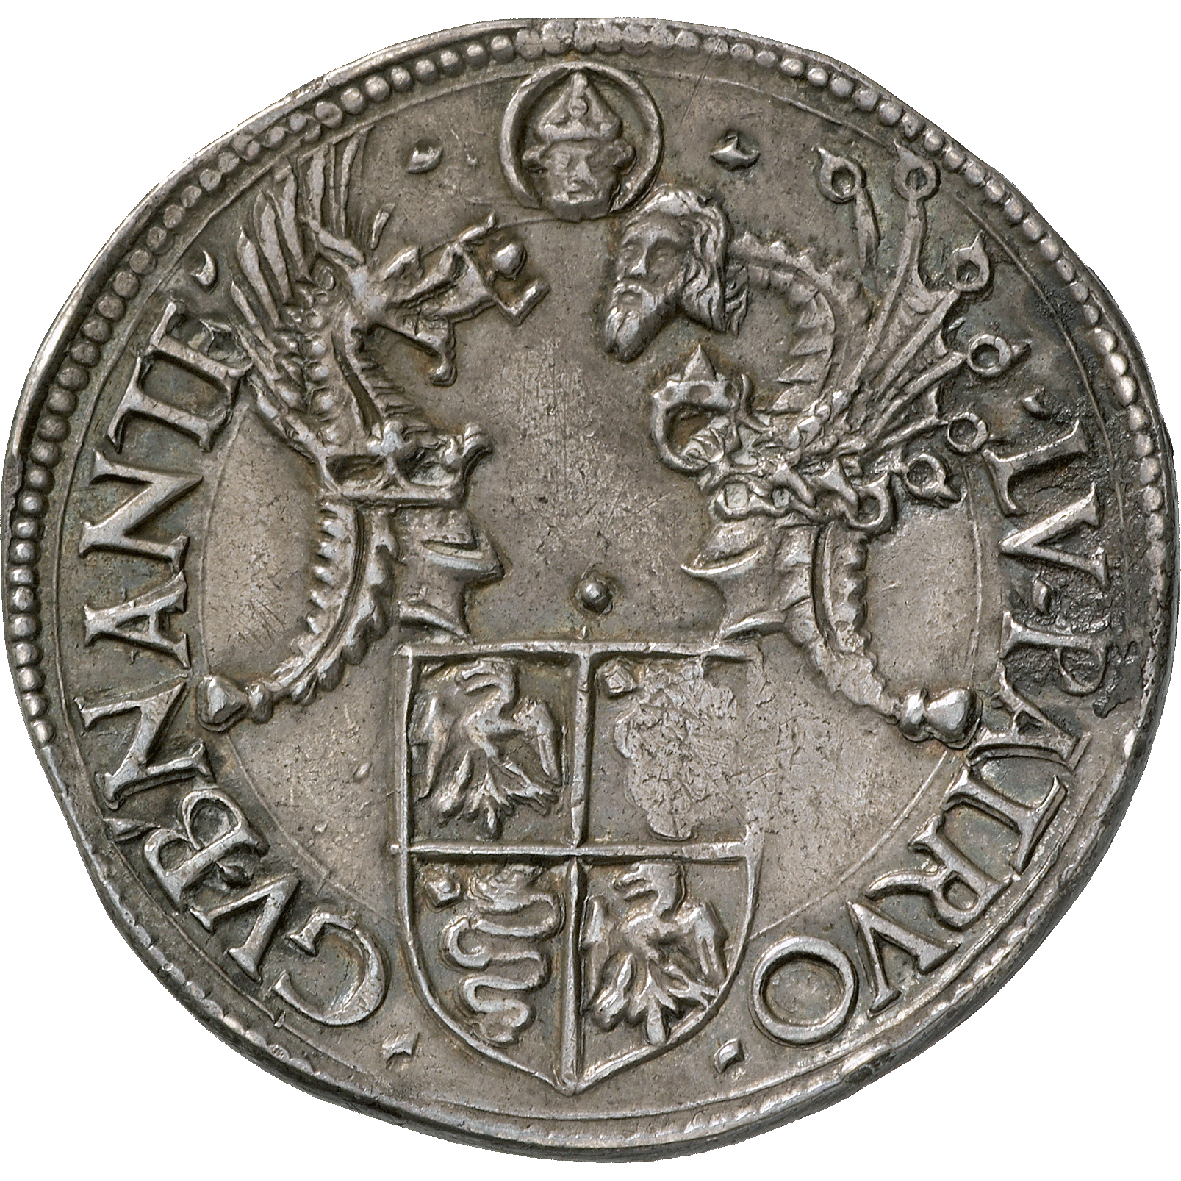 Herzogtum Mailand, Giovanni Galeazzo Maria Sforza, Testone (reverse)